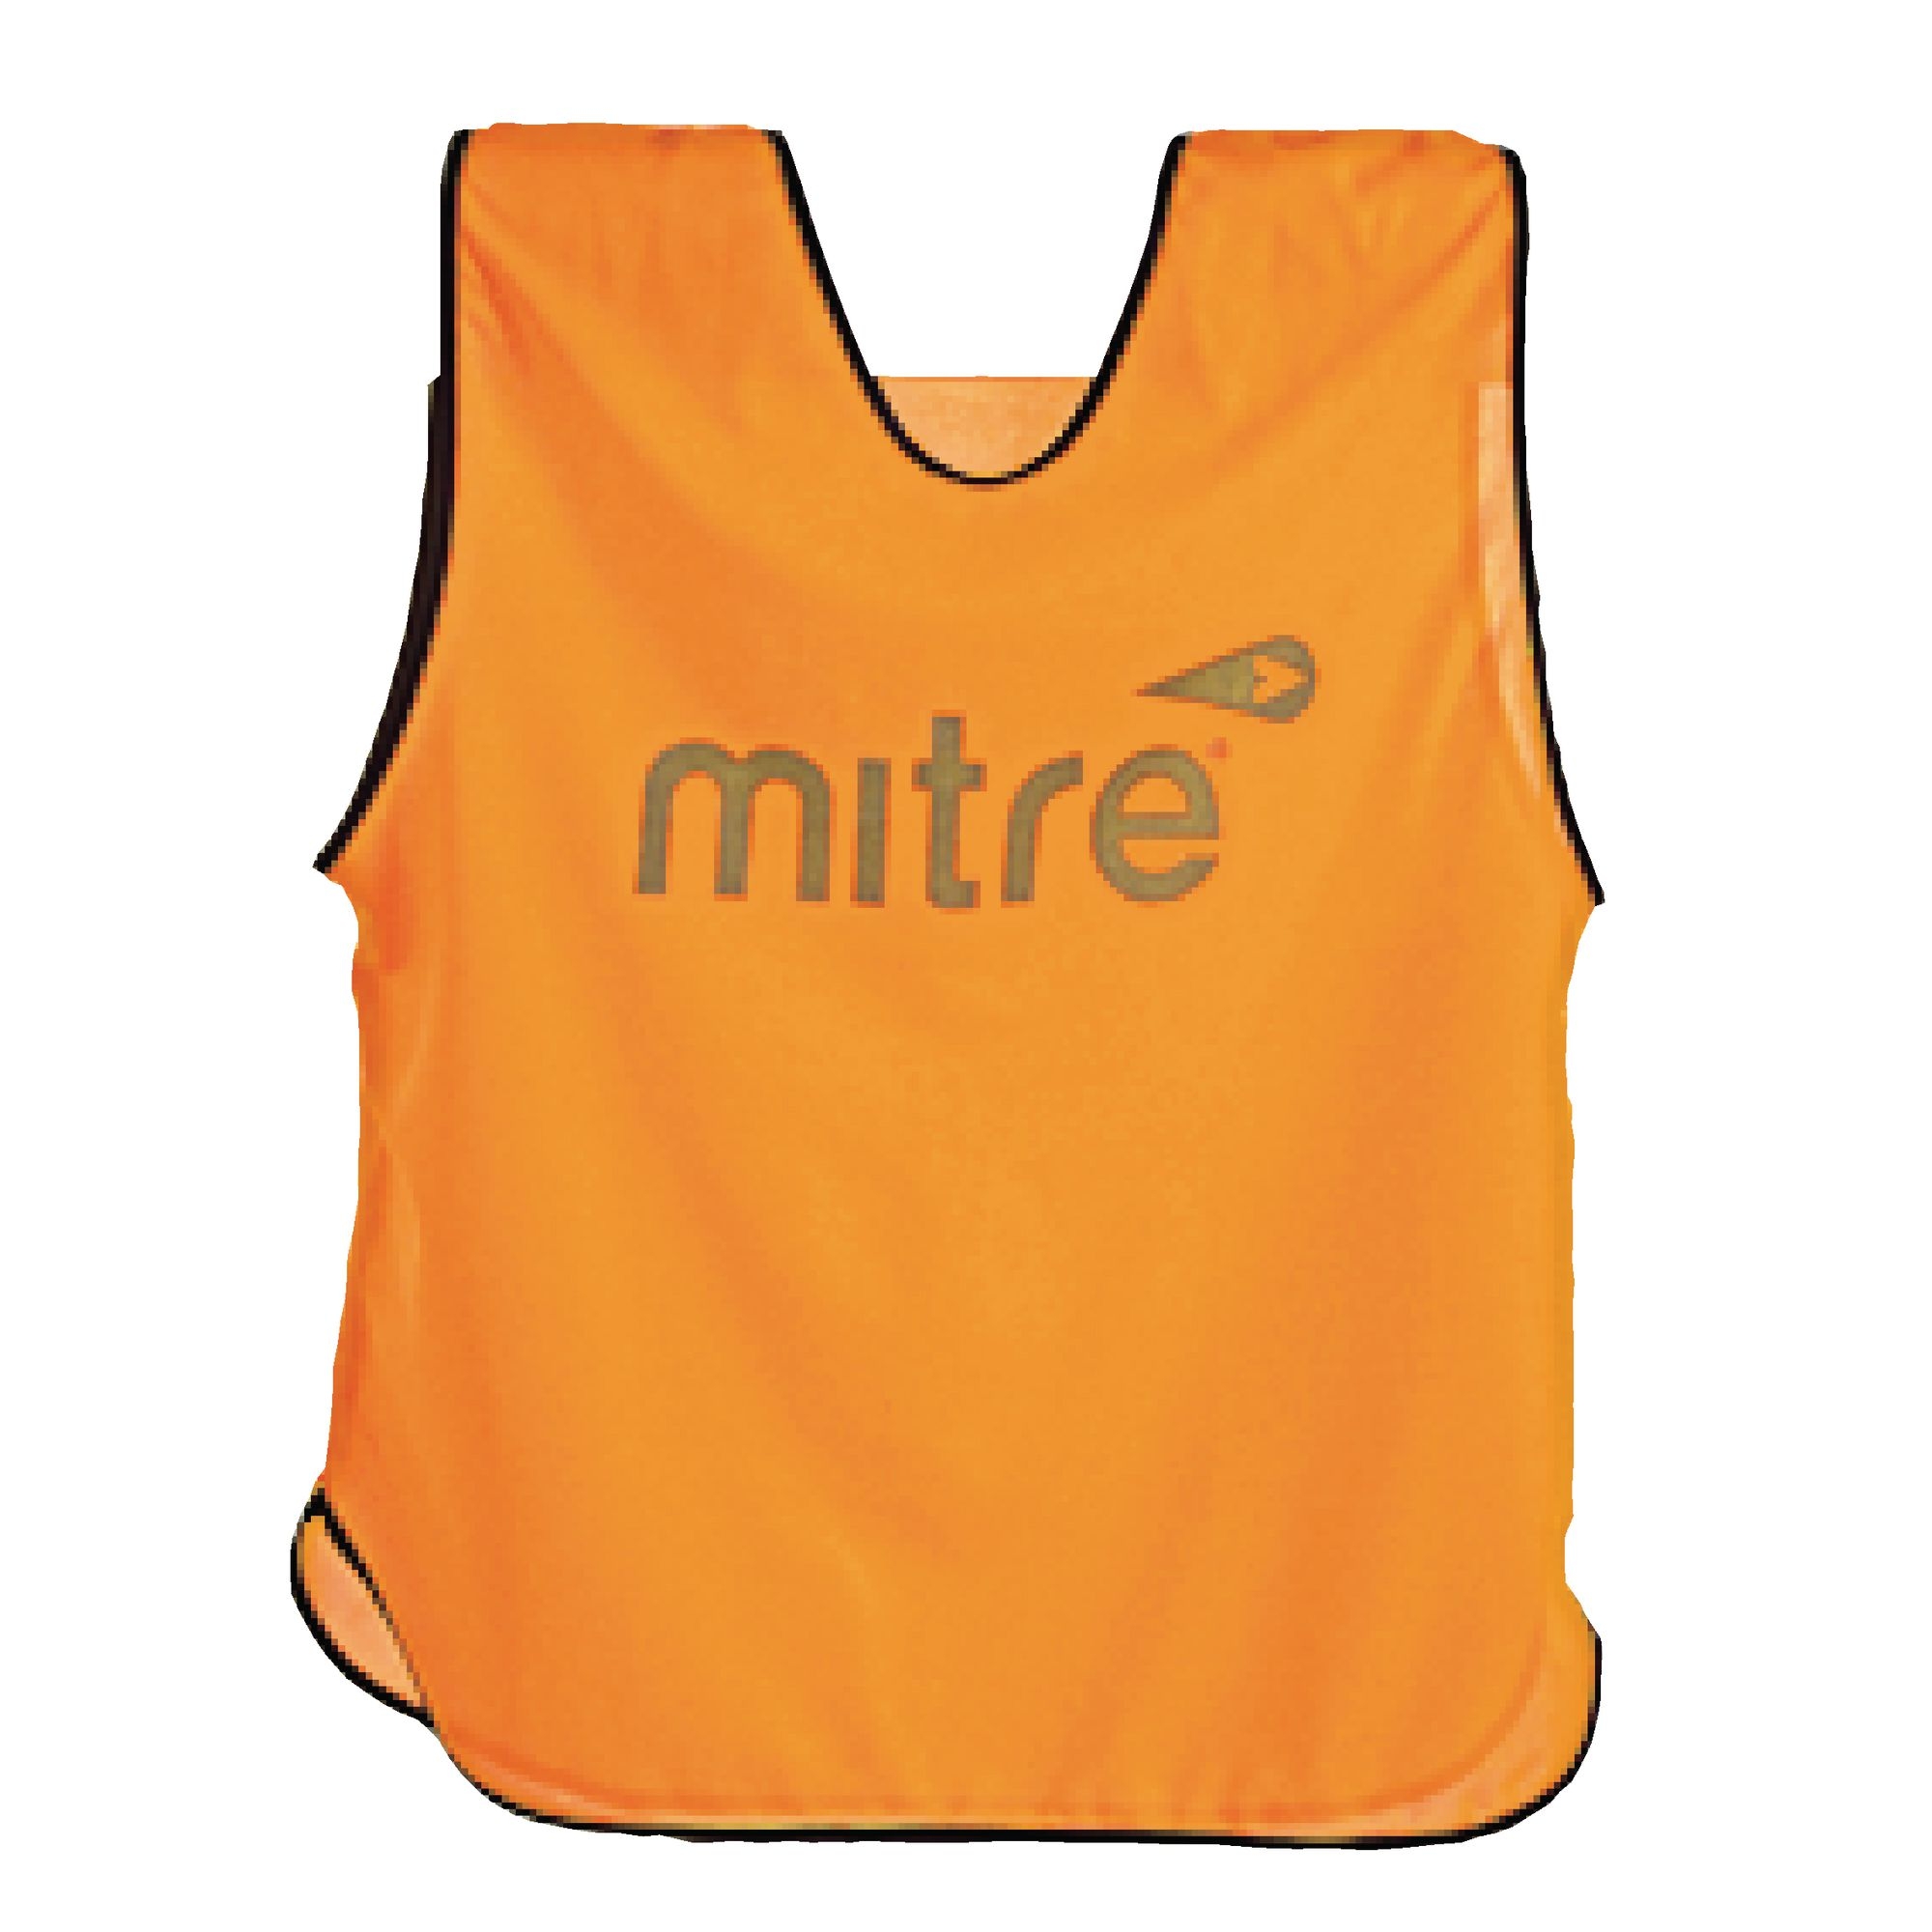 Mitre Training Bib - Adult Large-3 Extra Large - Orange/Black